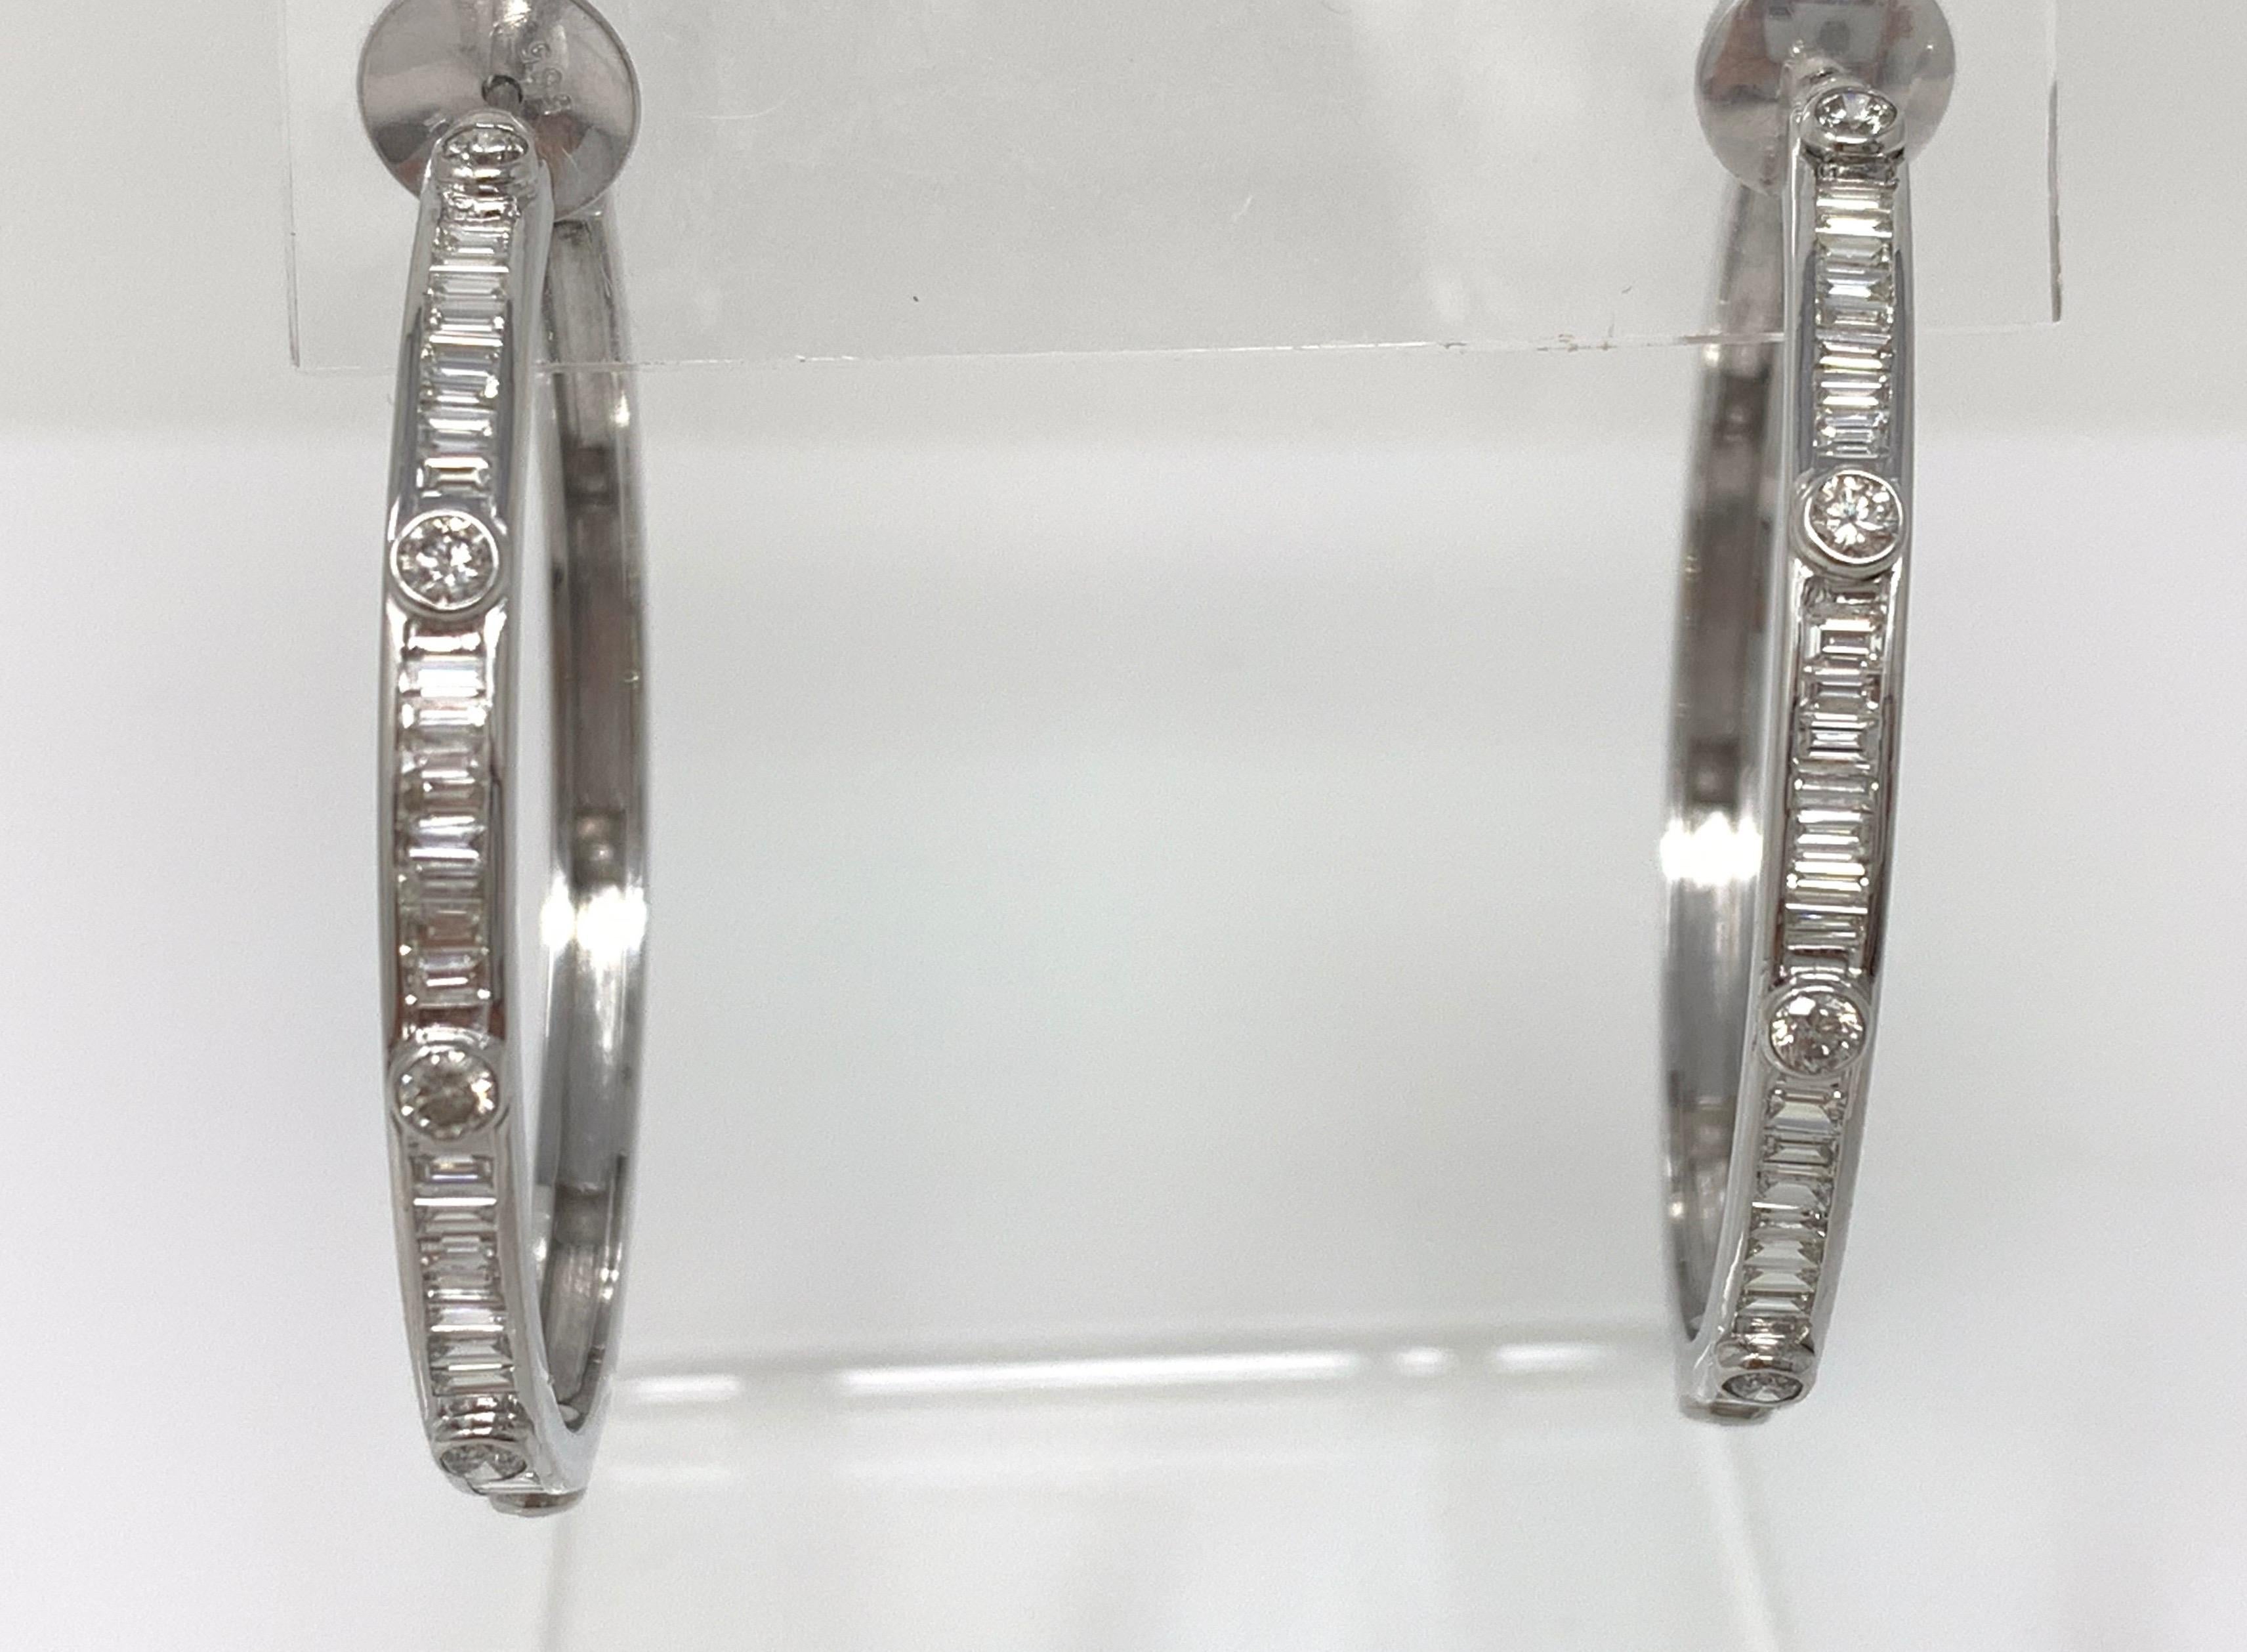 Boucles d'oreilles classiques et élégantes avec des diamants blancs ronds et brillants. Ces boucles d'oreilles Moguldiam Inc sont fabriquées à la main en or blanc 18 carats. Le poids du diamant est de 2,07 carats et le poids de l'or est de 15,350